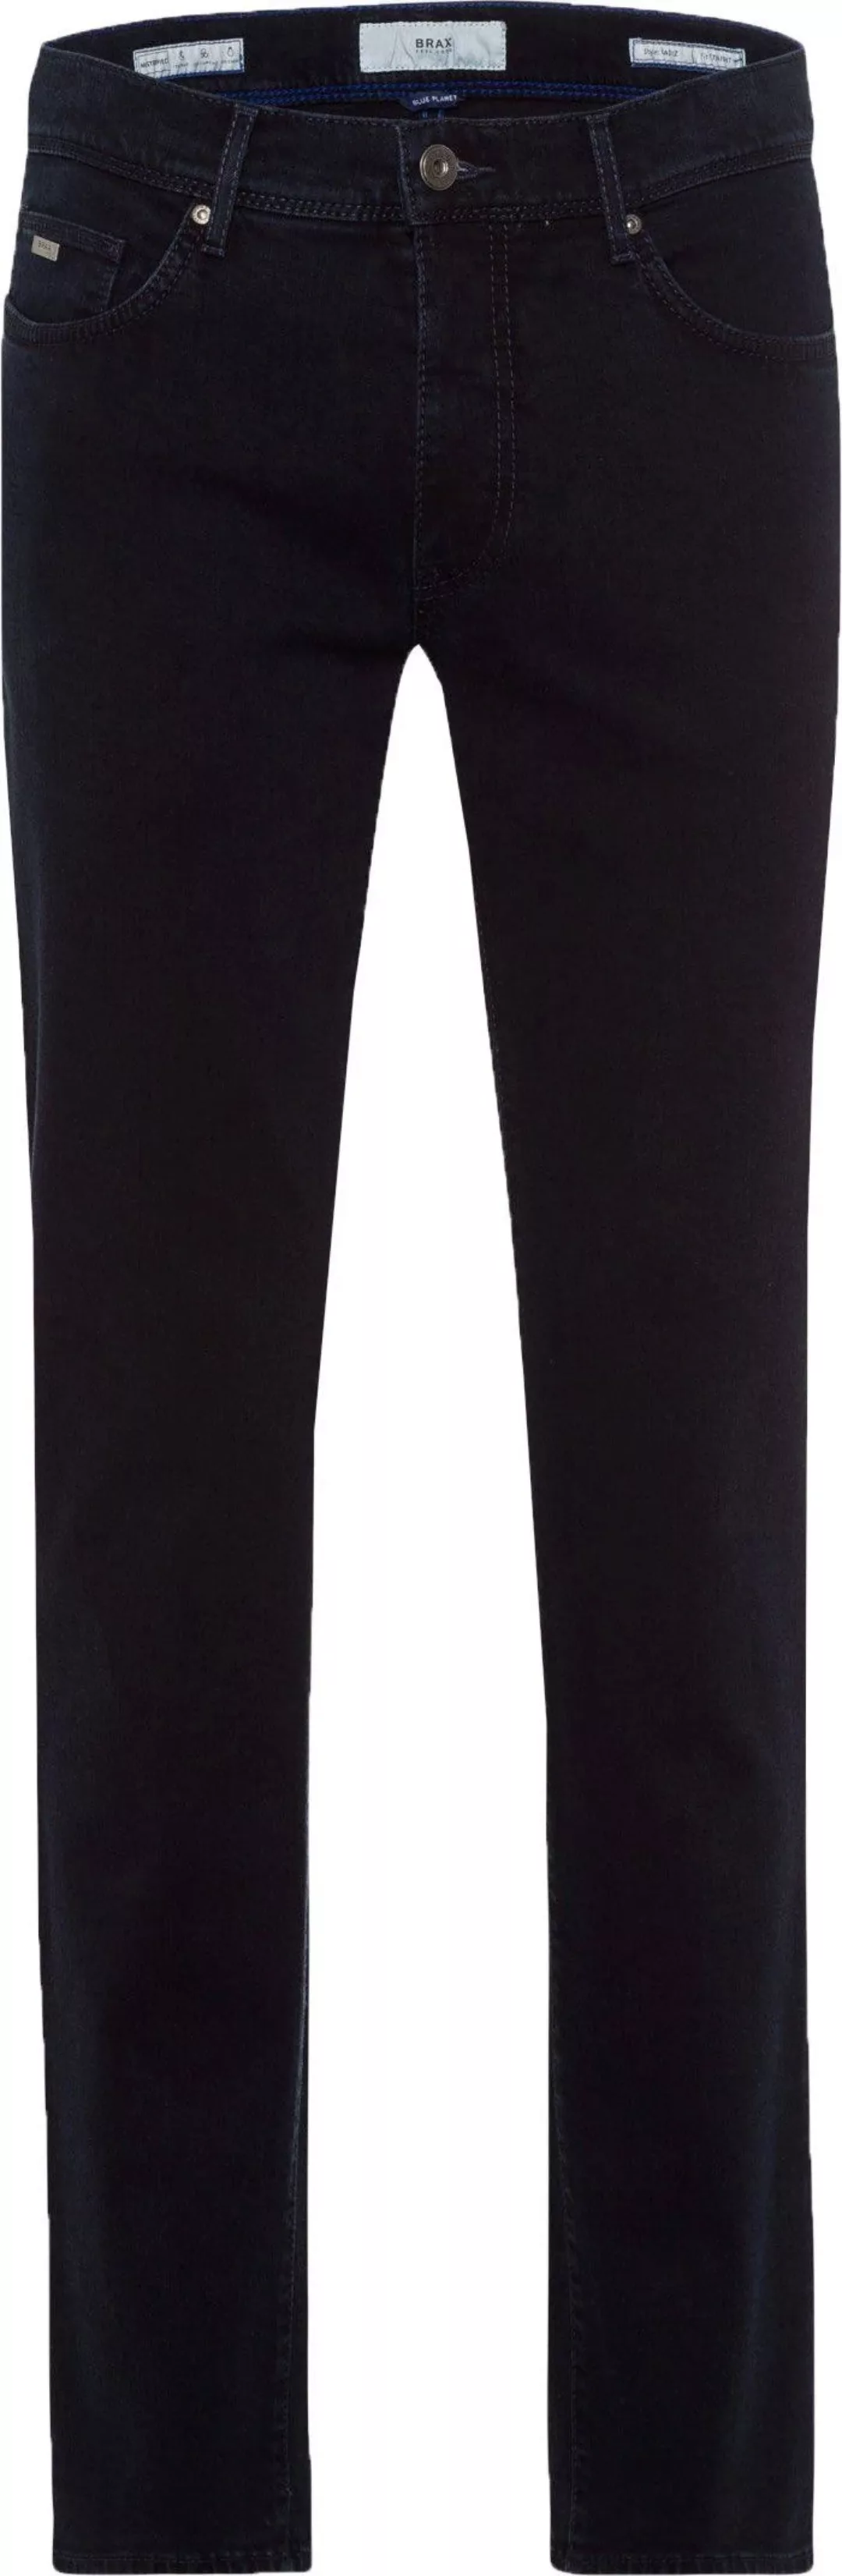 Brax Cadiz Jeans Navy Blau - Größe W 34 - L 36 günstig online kaufen